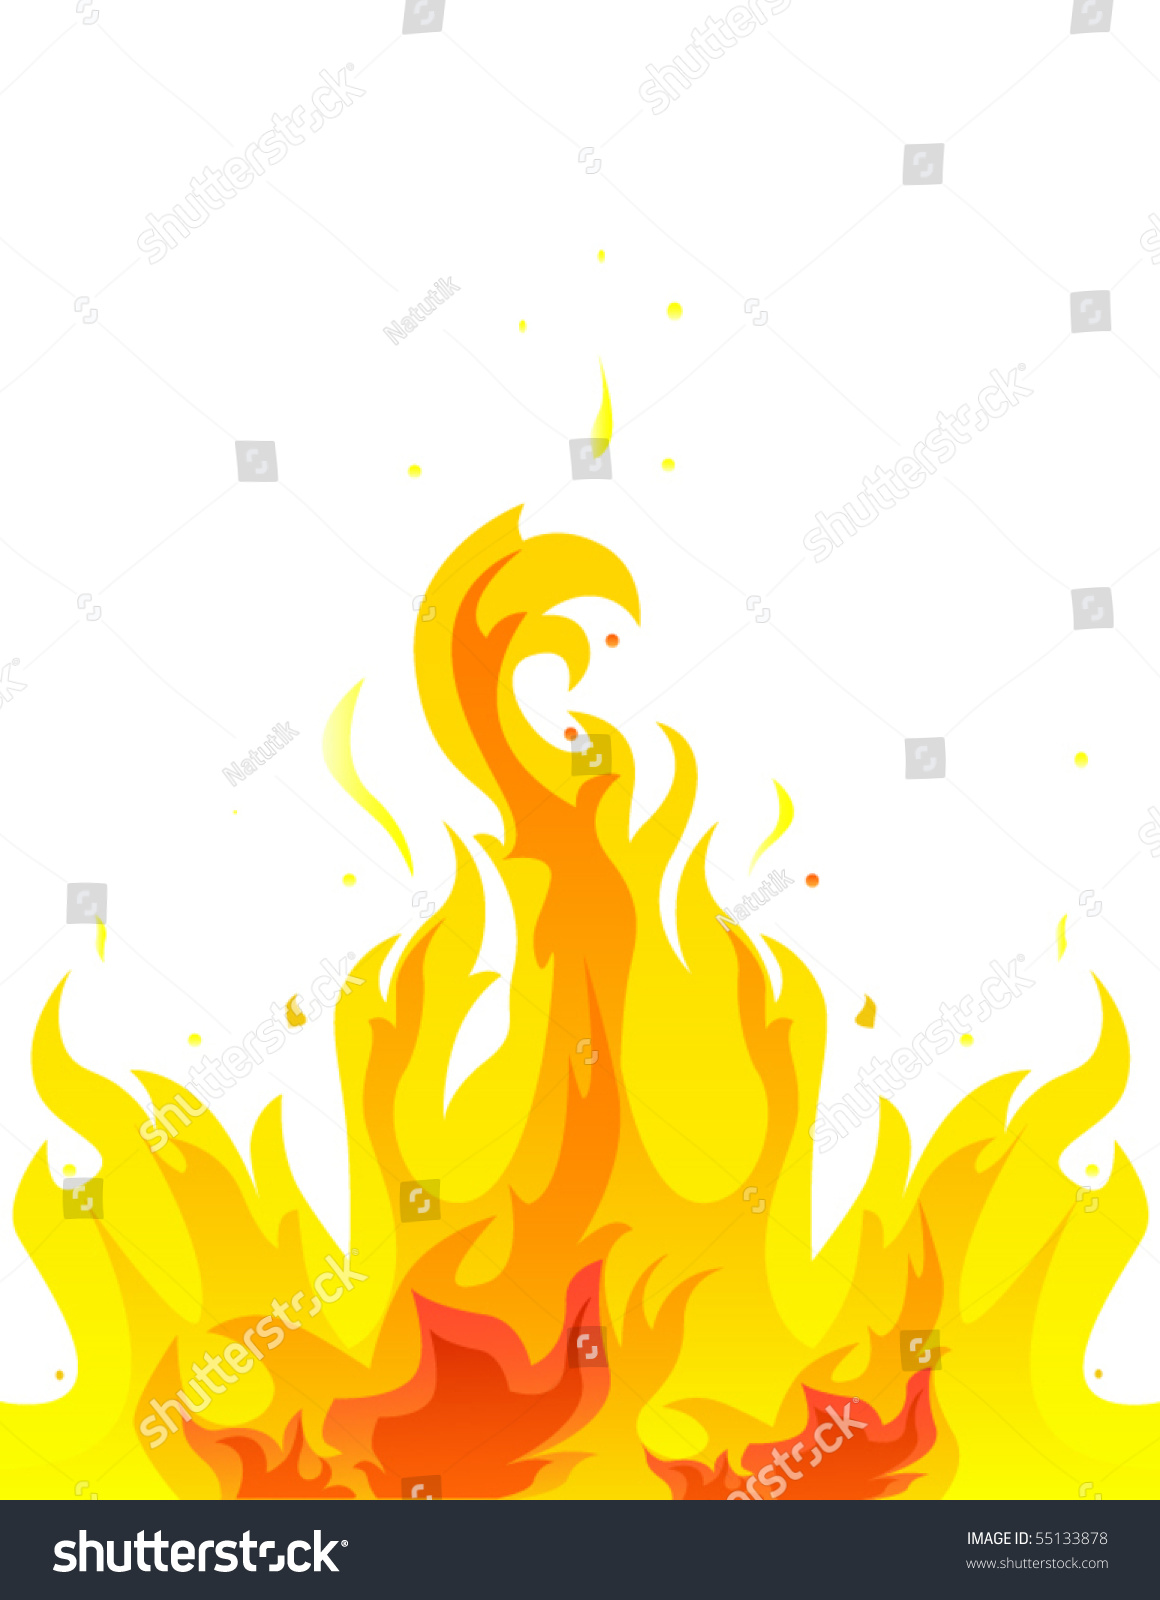 Flame Stock Vector Illustration 55133878 : Shutterstock